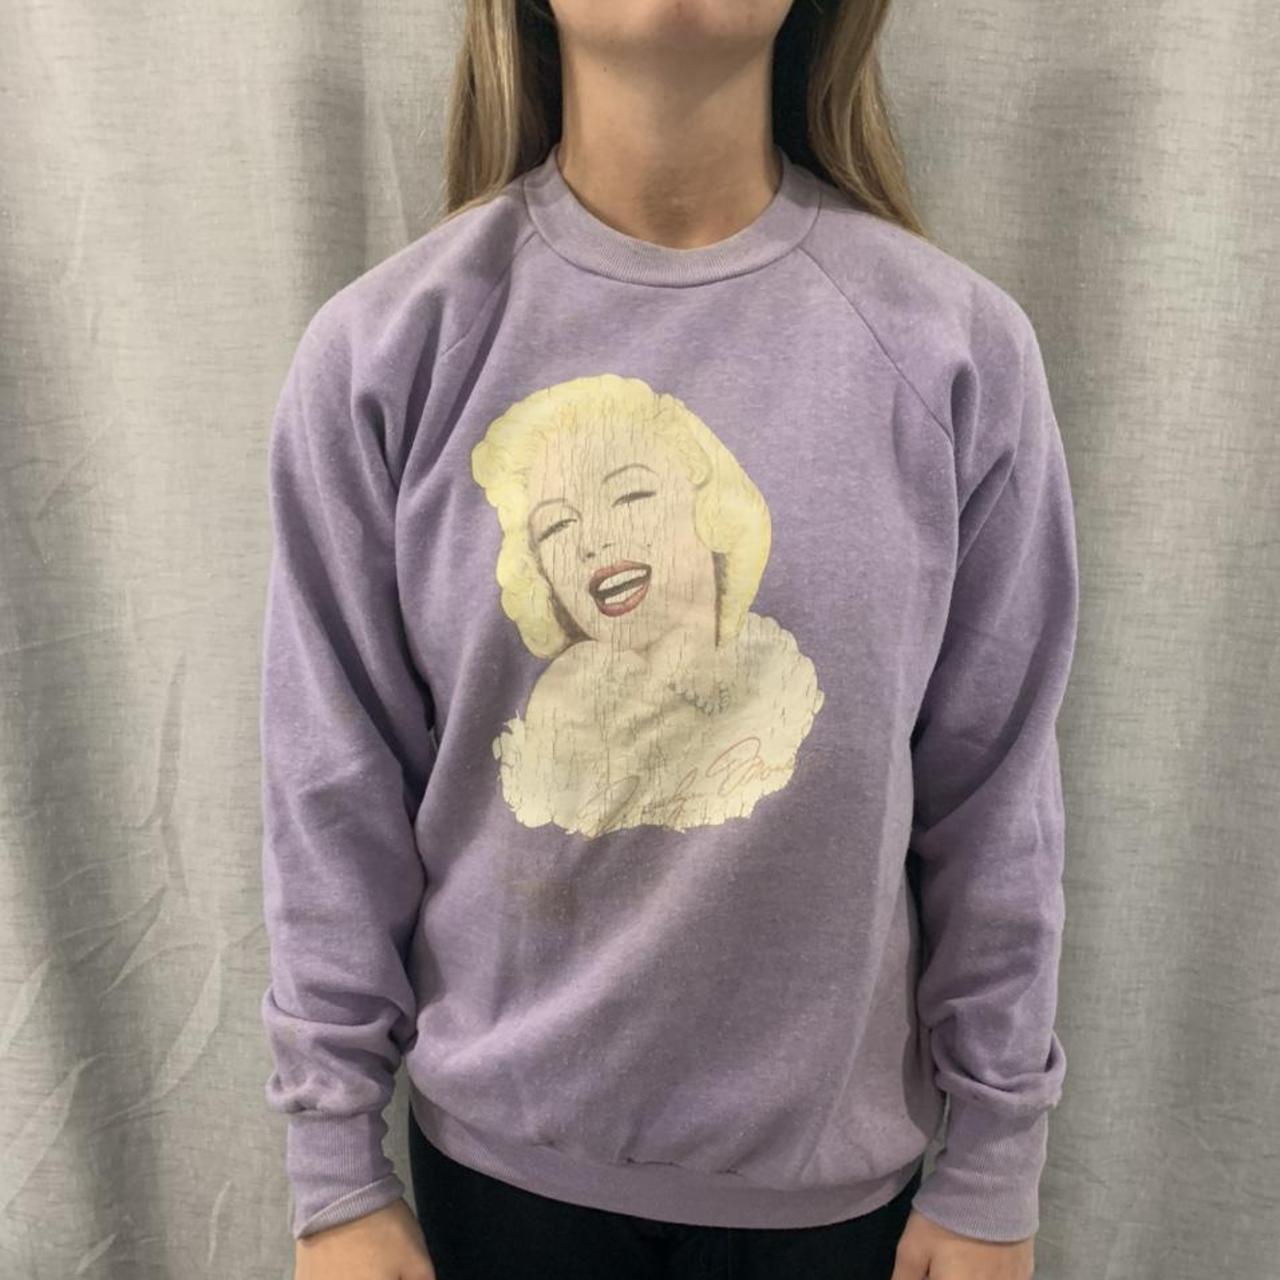 Vintage 80s Marilyn Monroe sweatshirt , Model is 5’2...